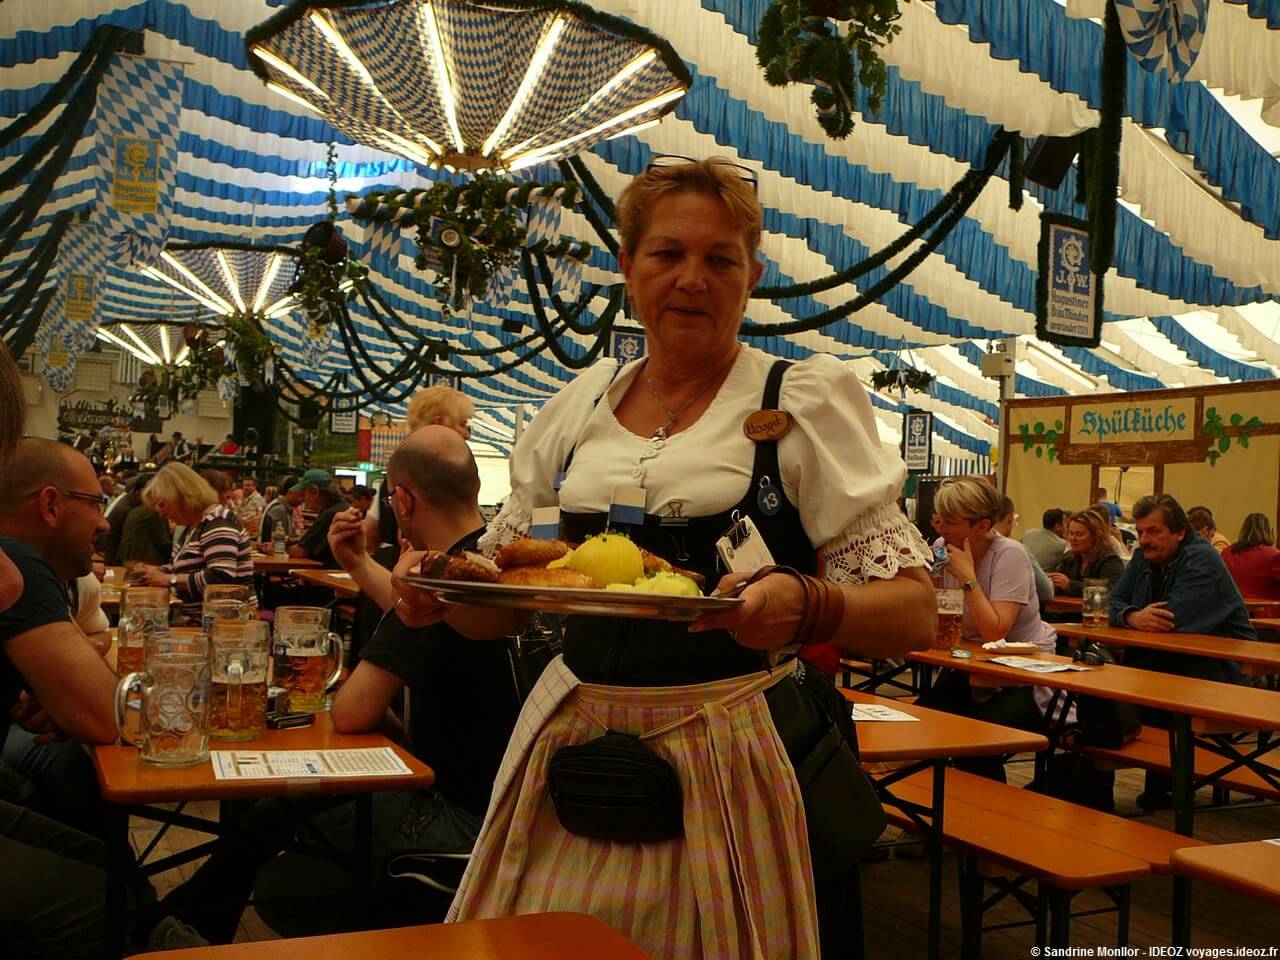 Serveuse en habits bavarois apportant un plat typique de viandes et knodels à la fête de la bière de Munich